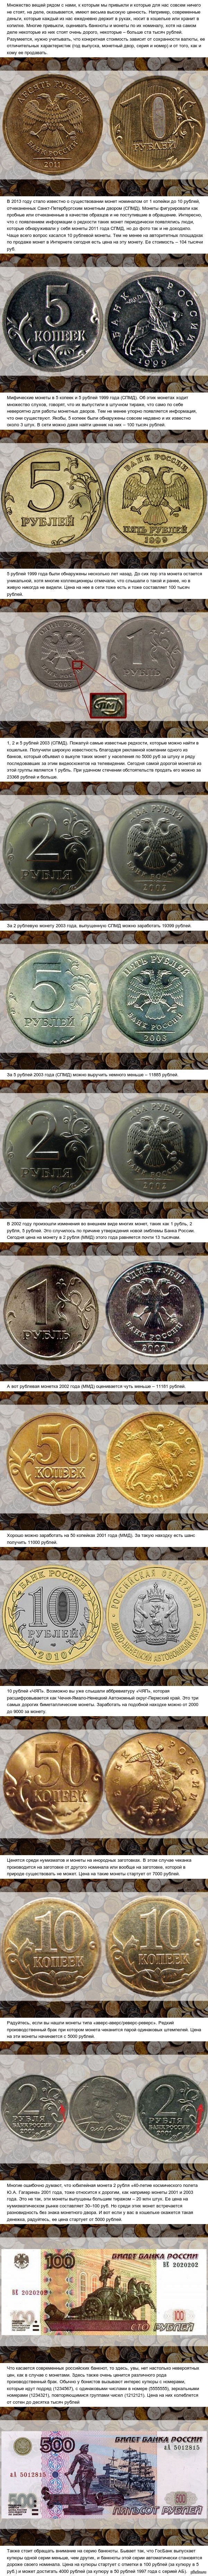 Самые дорогие современные российские монеты и банкноты  